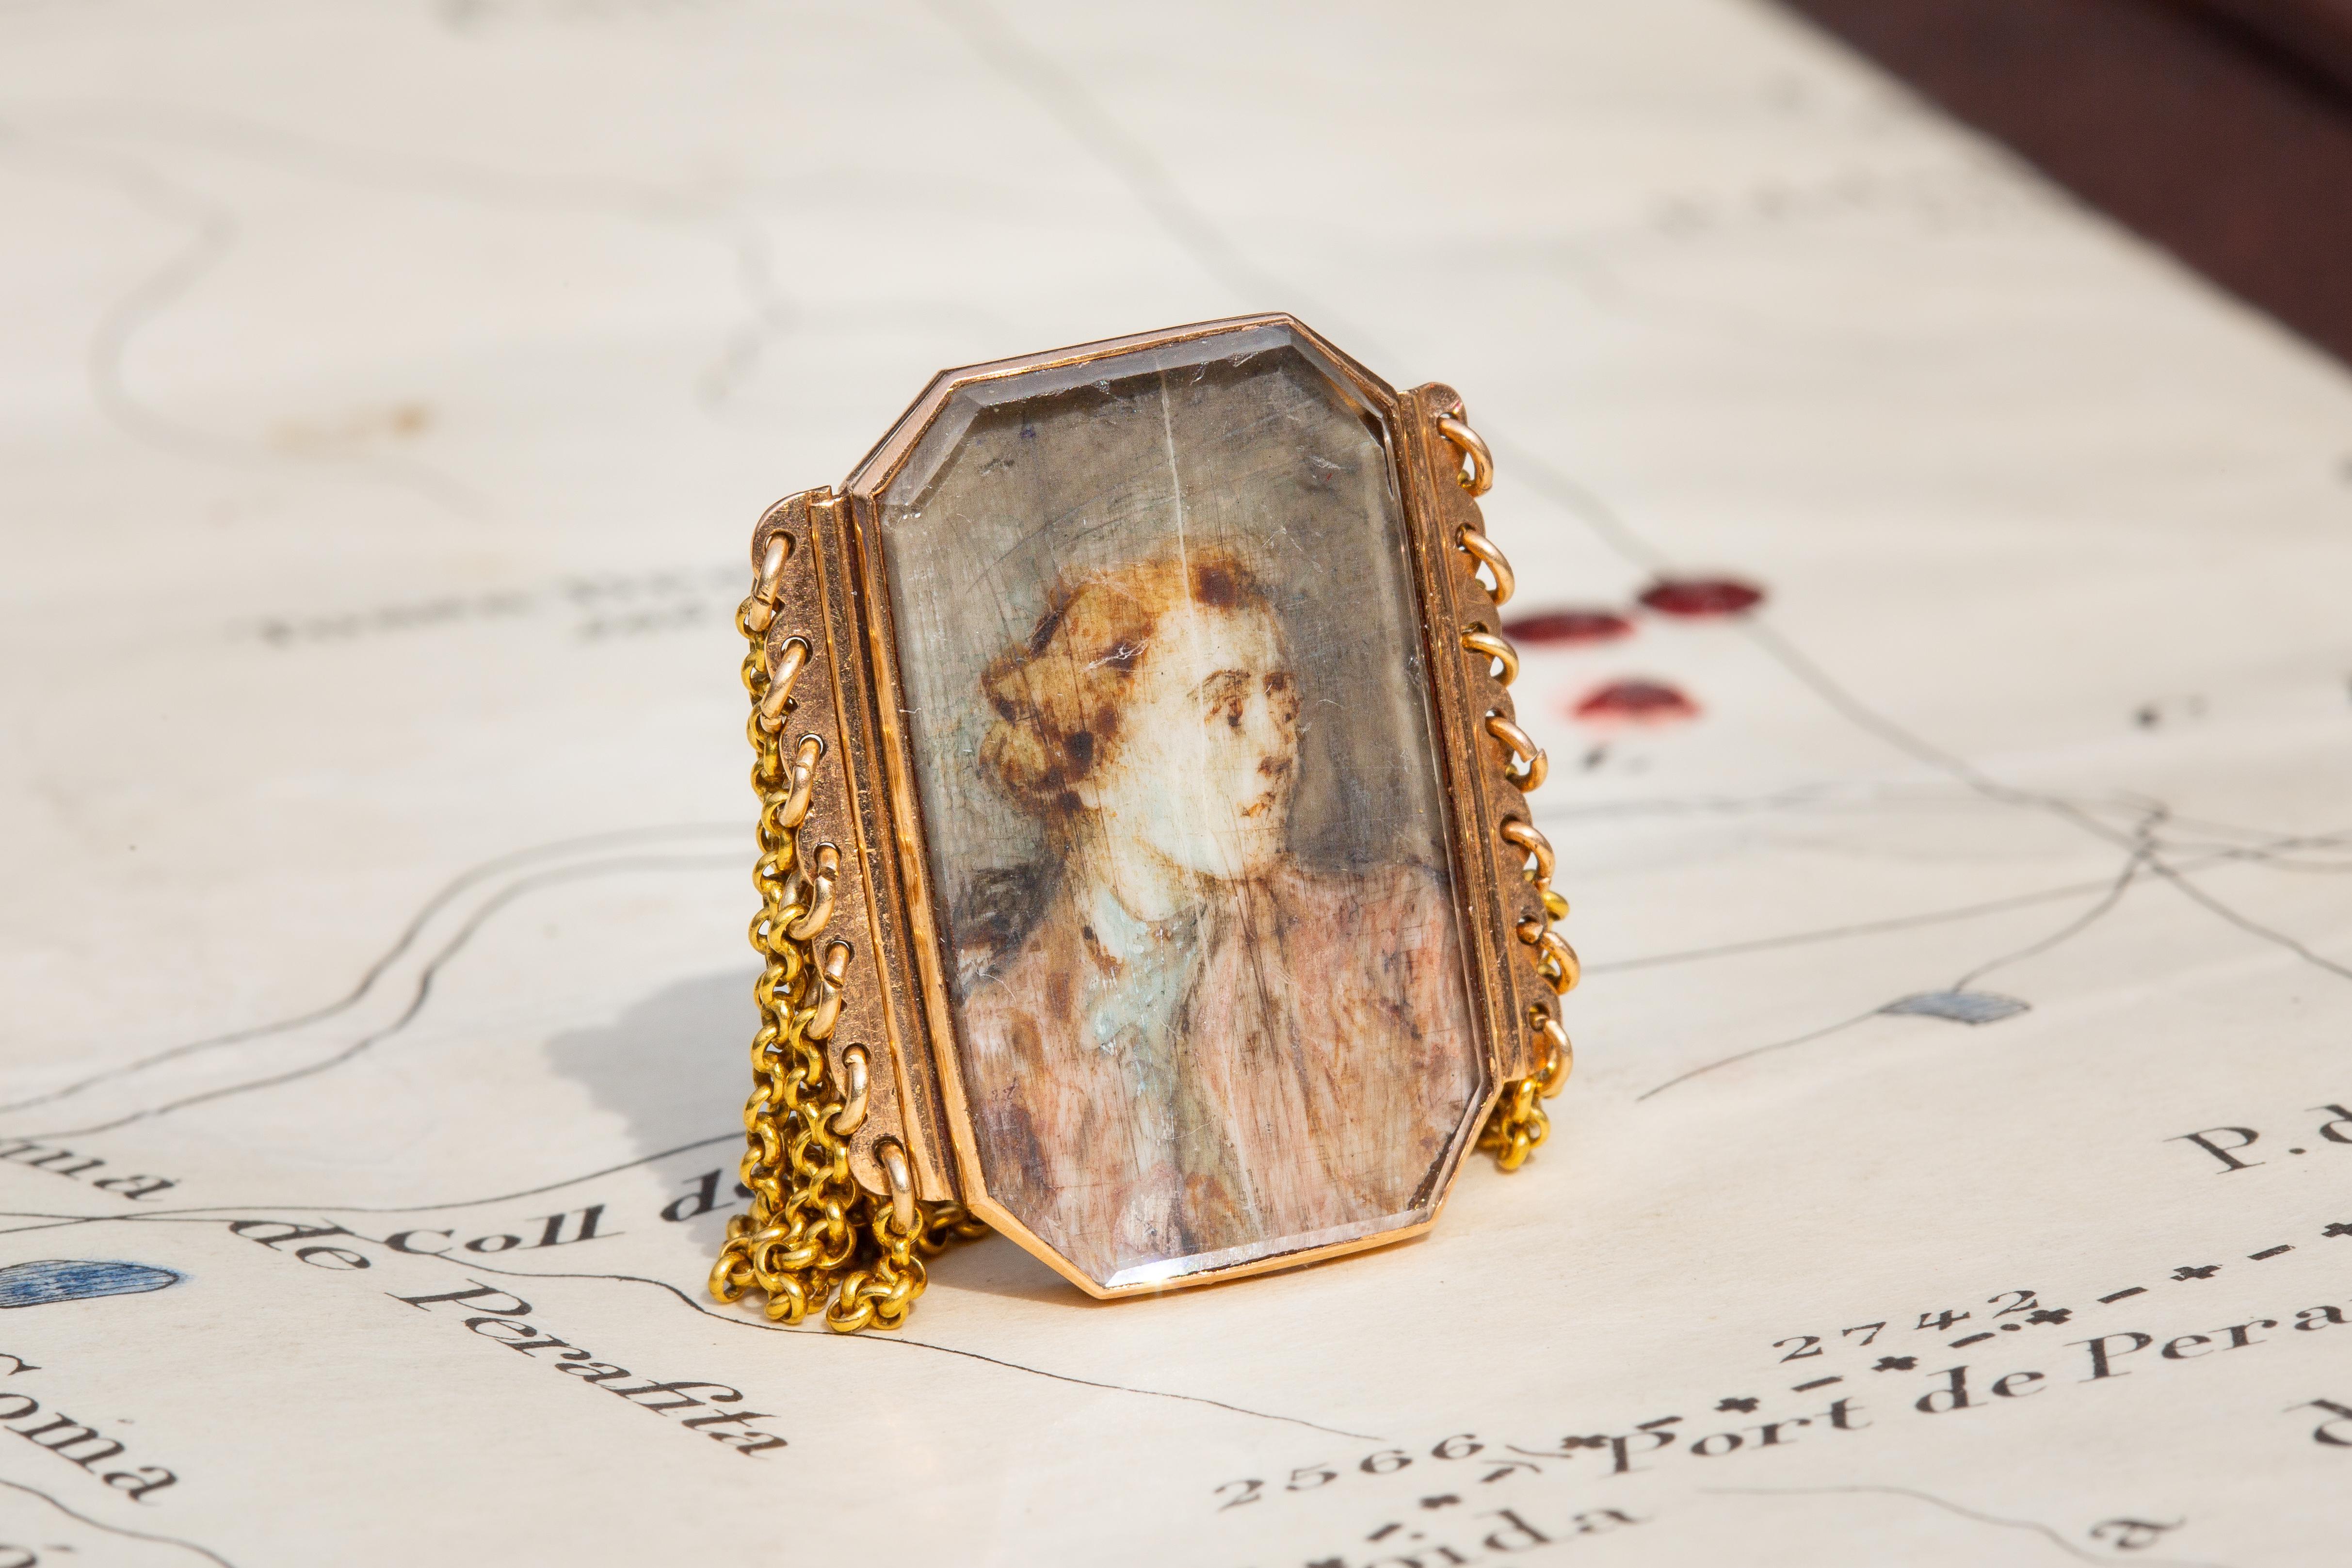 Dieser sehr ungewöhnliche antike Goldring zeigt eine französische Porträtminiatur aus dem späten 18. Jahrhundert, die an einer mehrsträngigen Gliederkette befestigt ist. 

Porträtminiaturringe waren zumeist sentimentaler Natur; sie wurden von